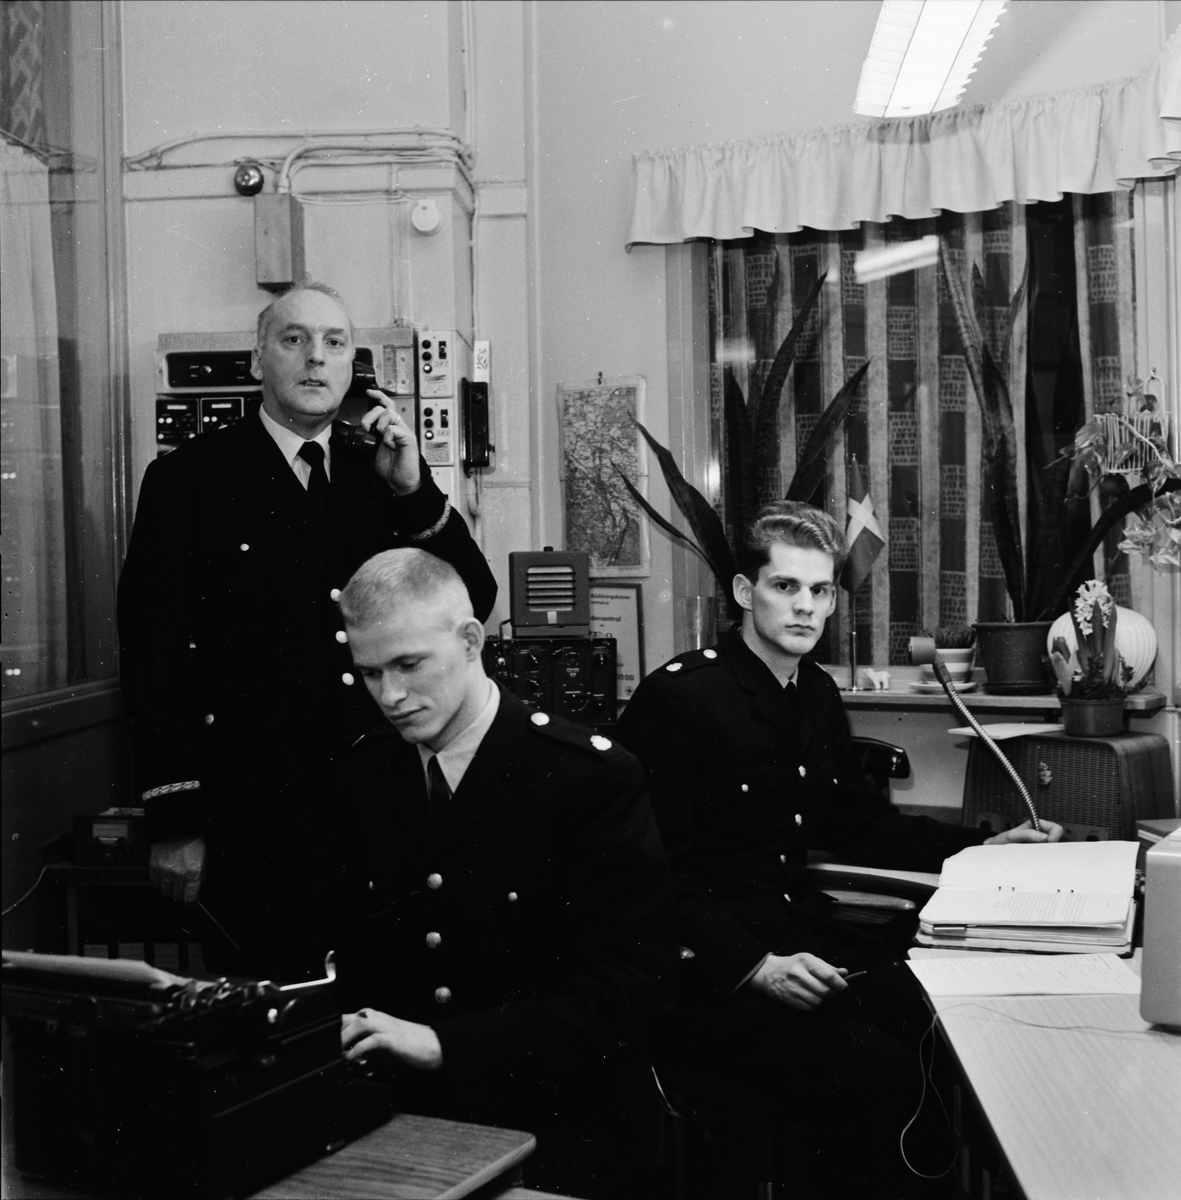 "Jul på polisstationen", Uppsala 1960